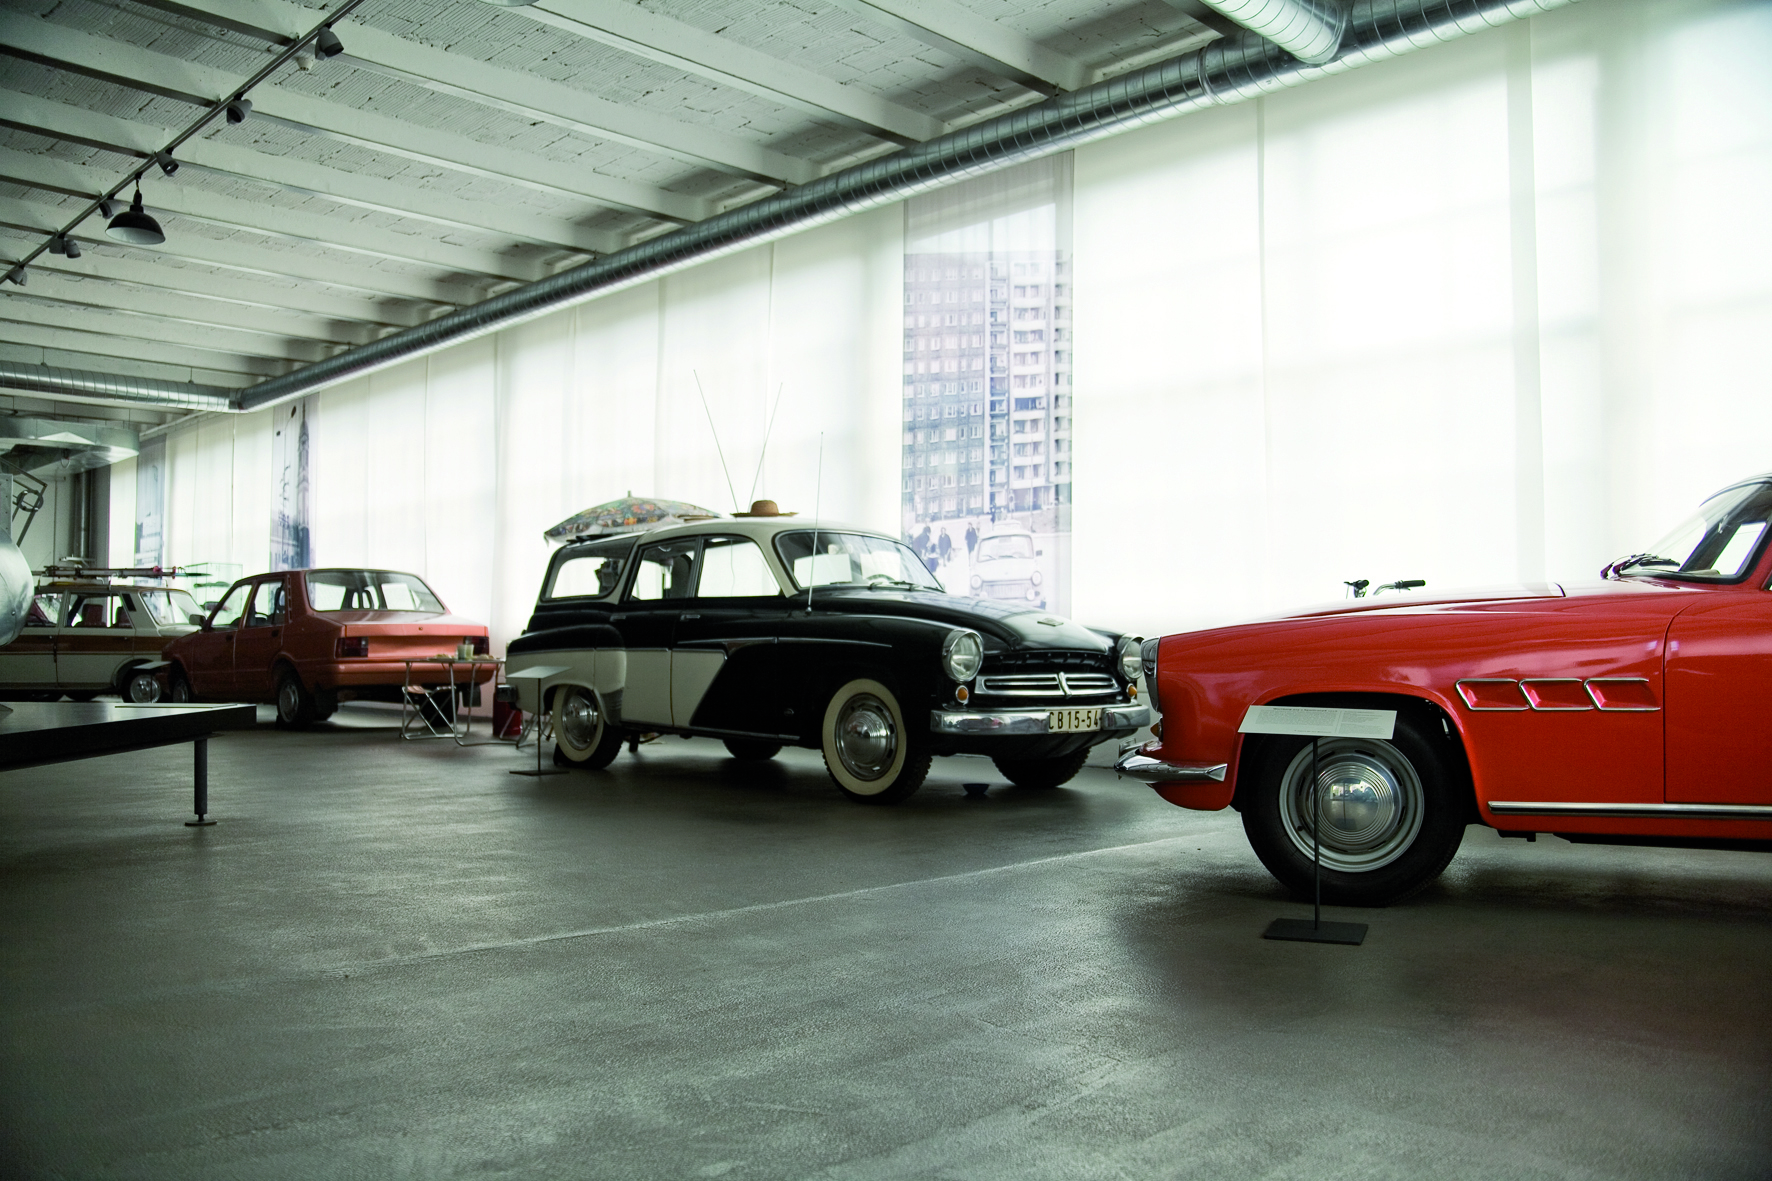 Die Dauerausstellung Automobile Welt Eisenach im Werksgebäude O2 dokumentiert die über 100-jährige Automobilbautradition in Eisenach.